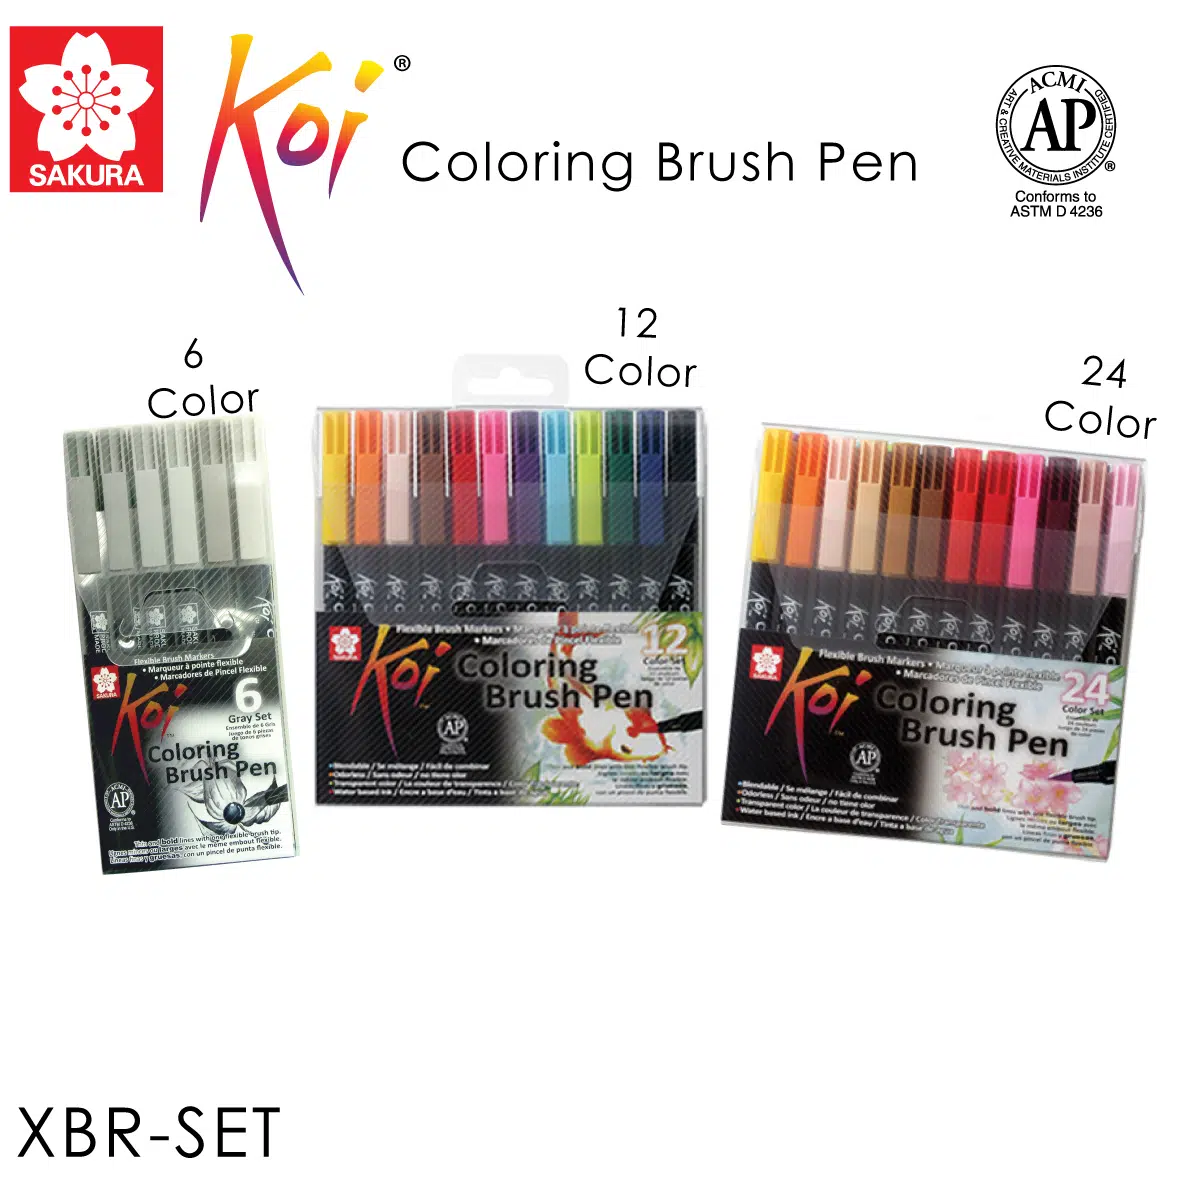 Koi Coloring Brush Pen 6